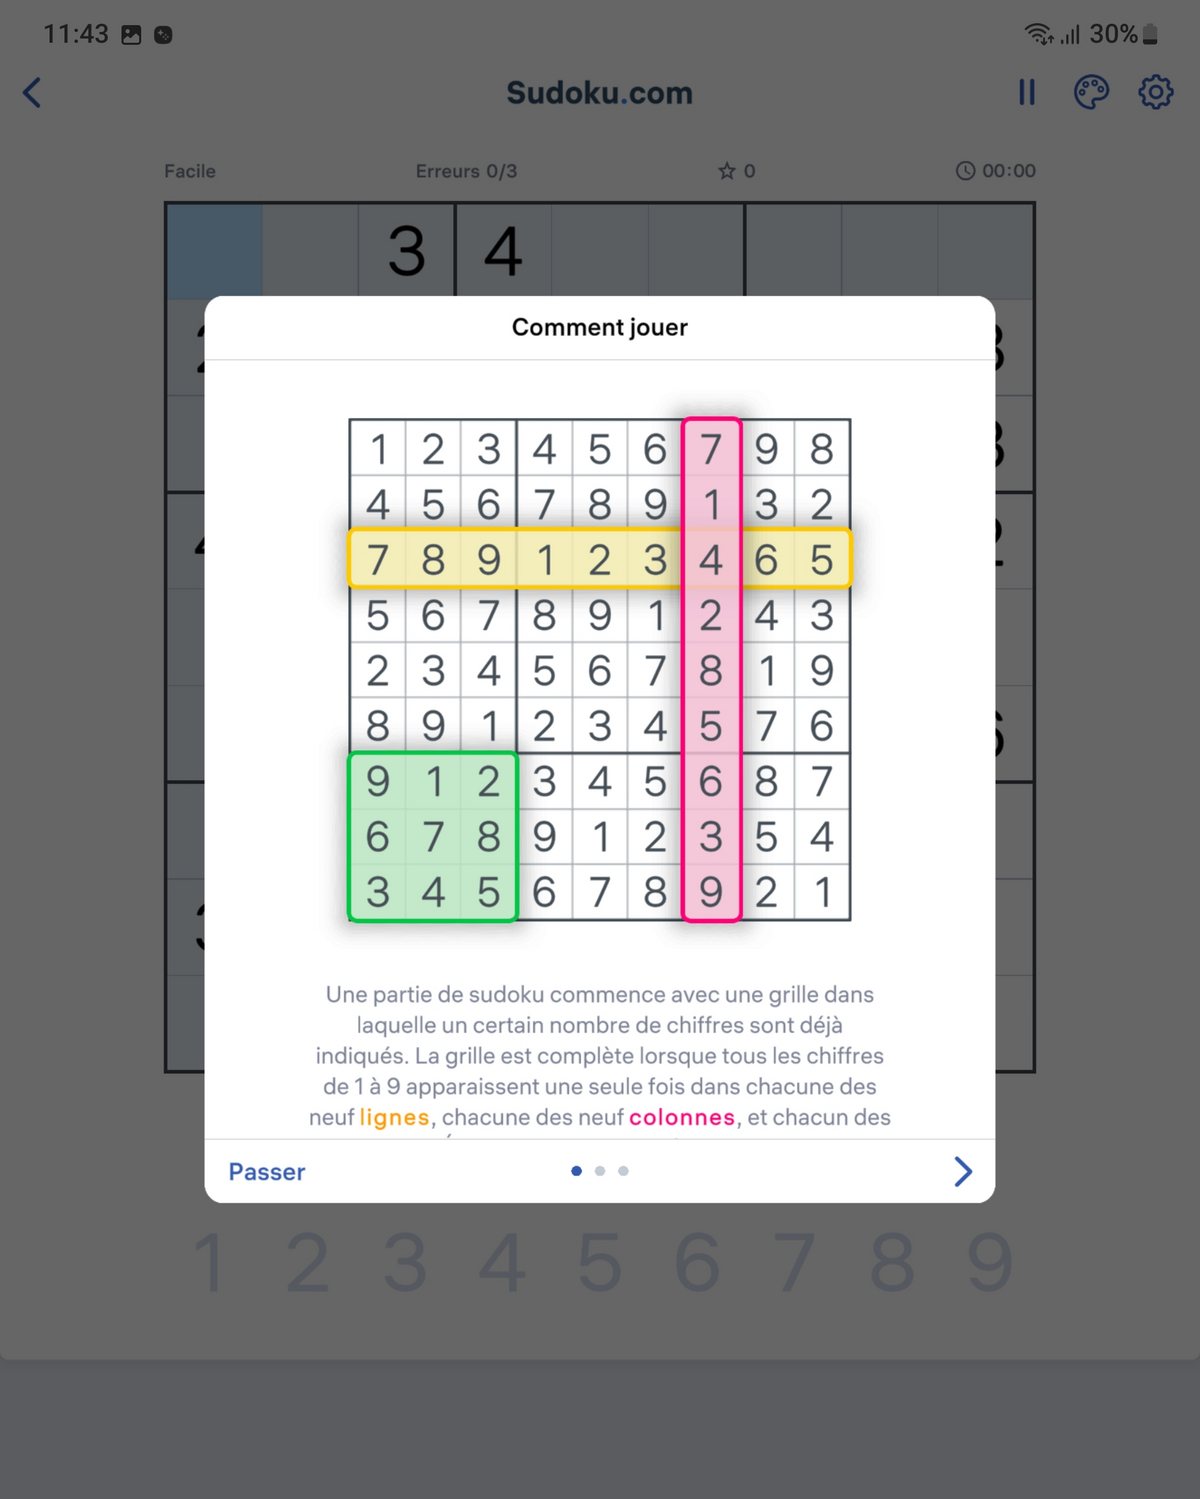 Sudoku.com Instructions